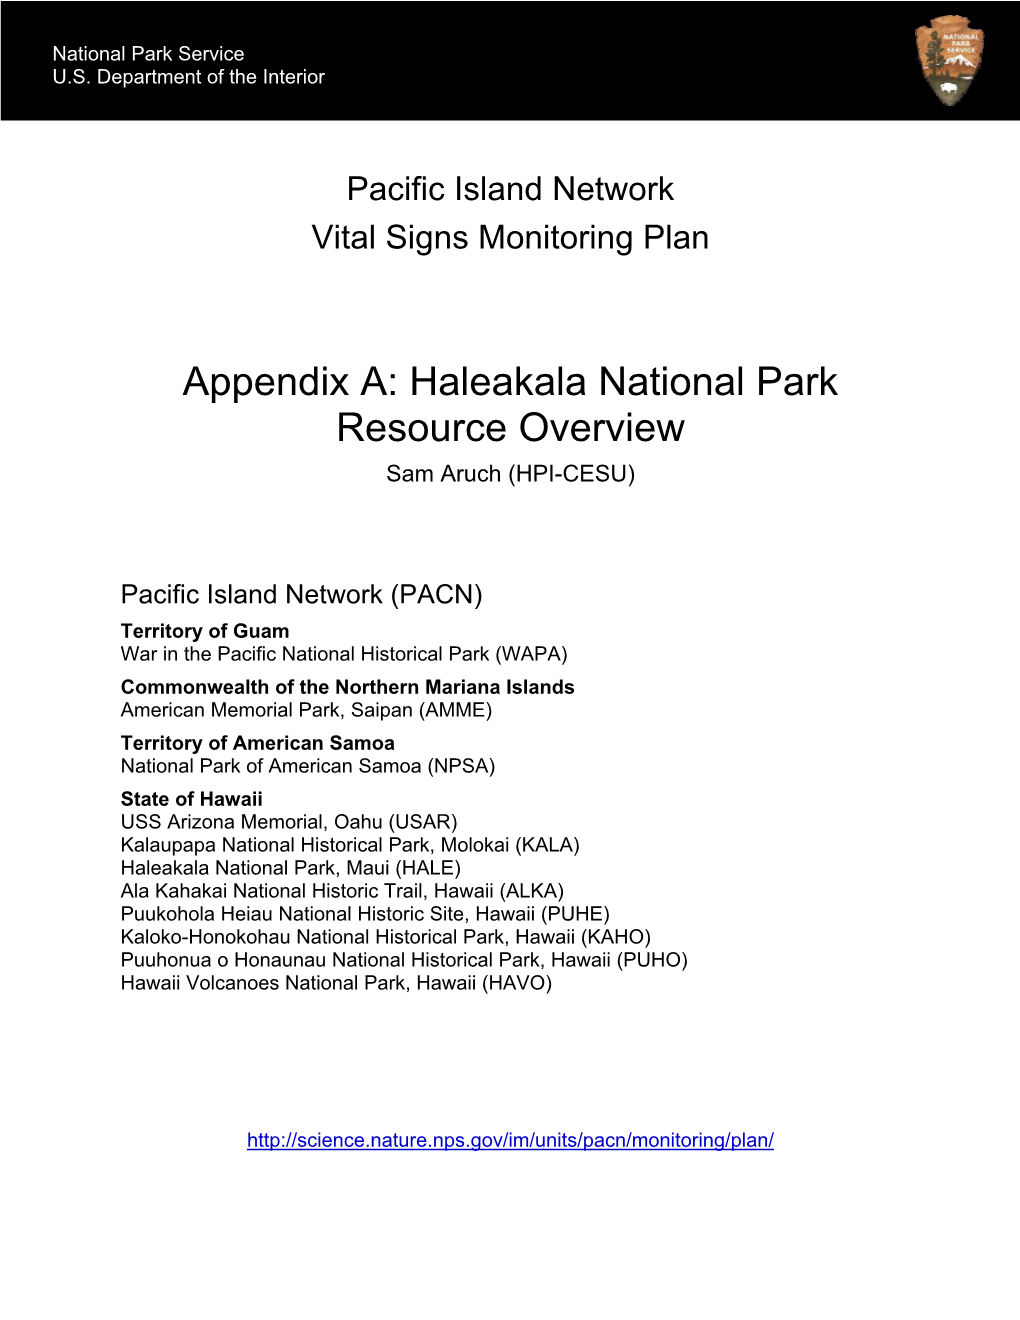 Appendix A: Haleakala National Park Resource Overview Sam Aruch (HPI-CESU)